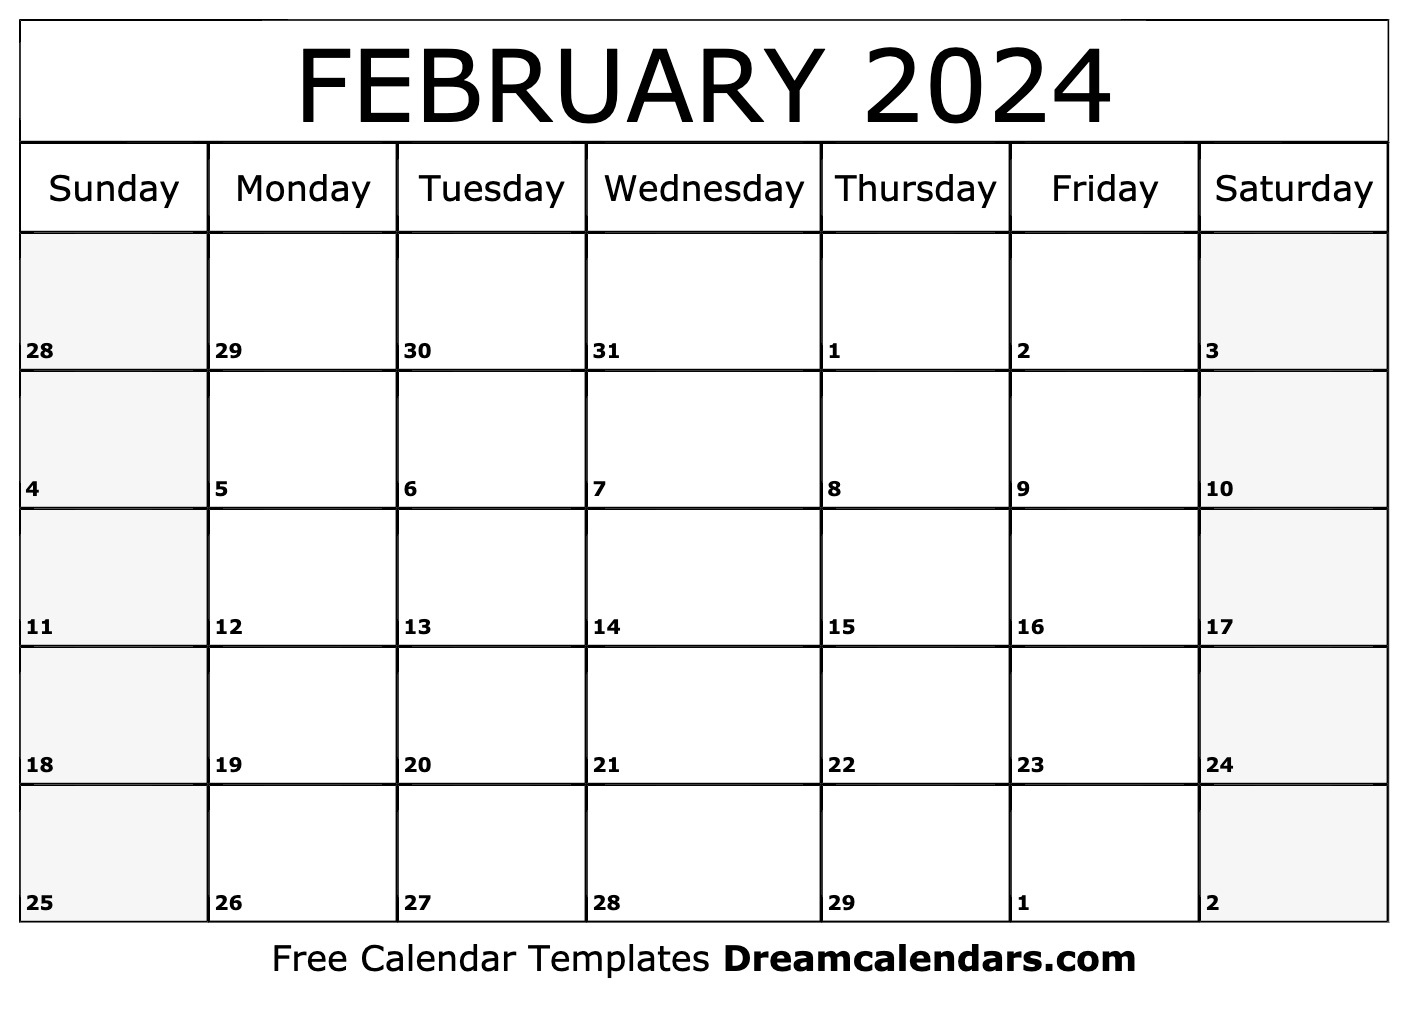 February 2024 Calendar - Free Printable 2024 February Calendar